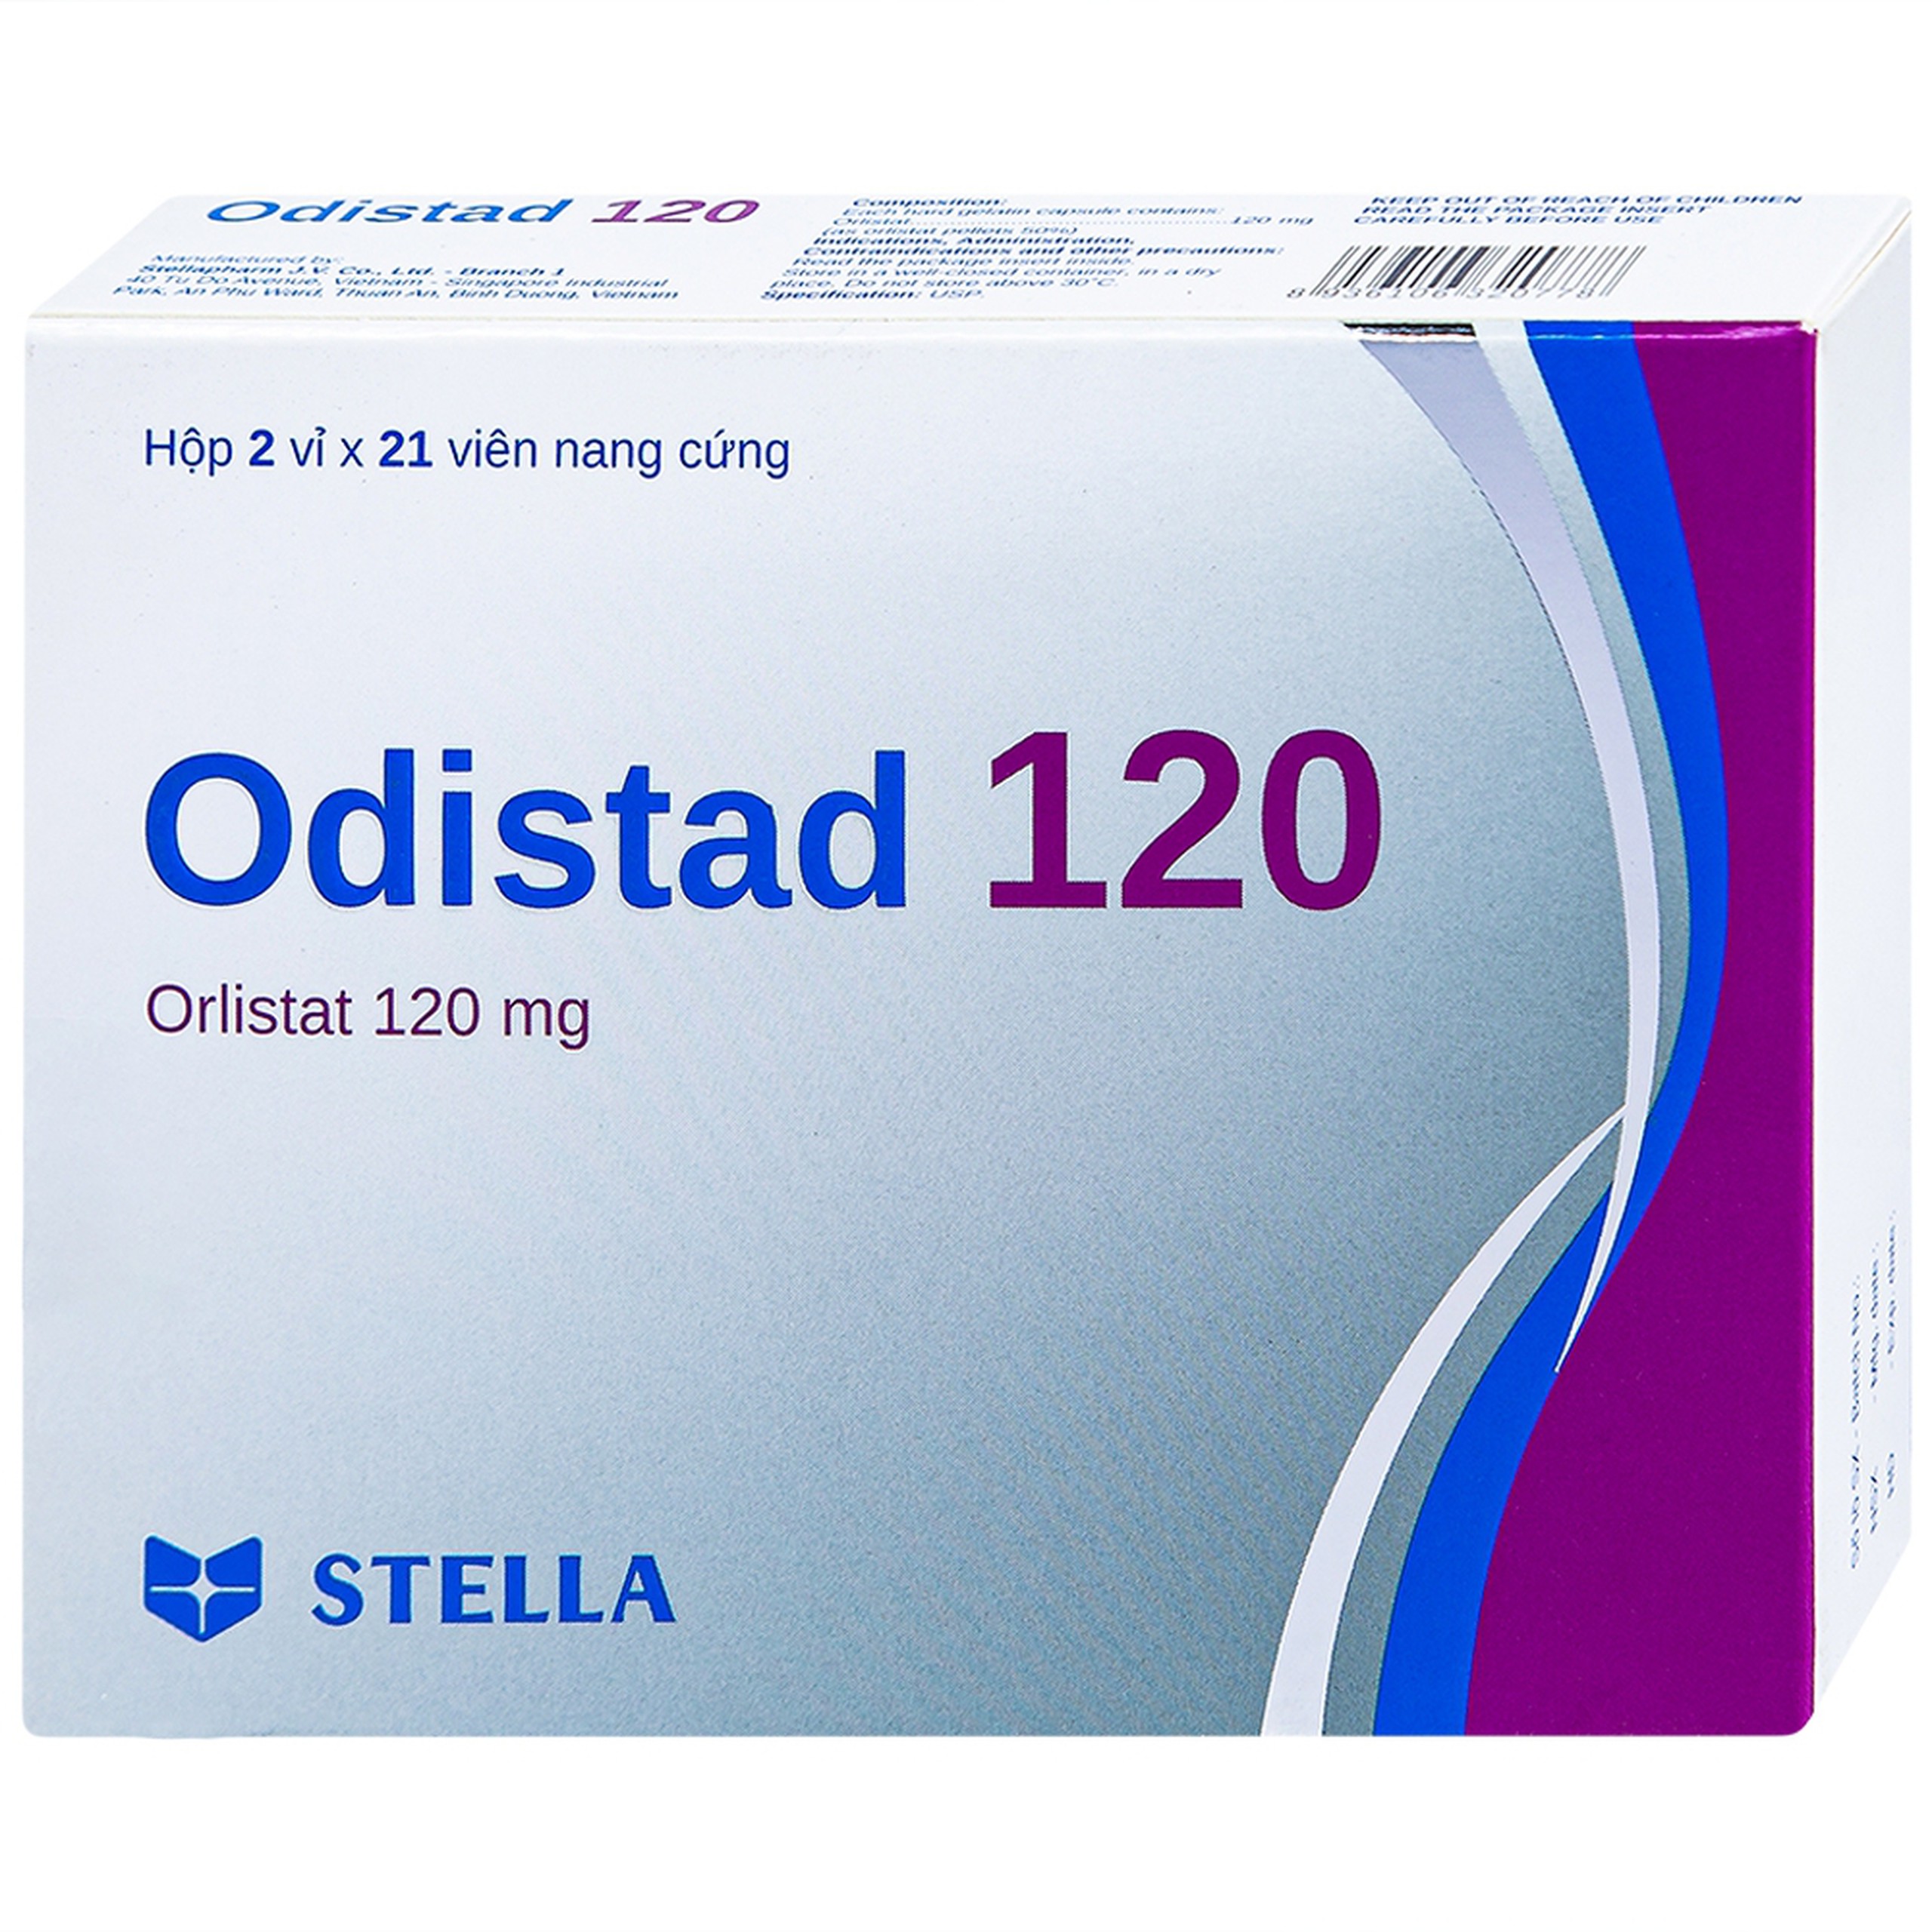 Thuốc Odistad 120 Stella điều trị béo phì và phòng ngừa tăng cân trở lại ở người lớn (2 vỉ x 21 viên)